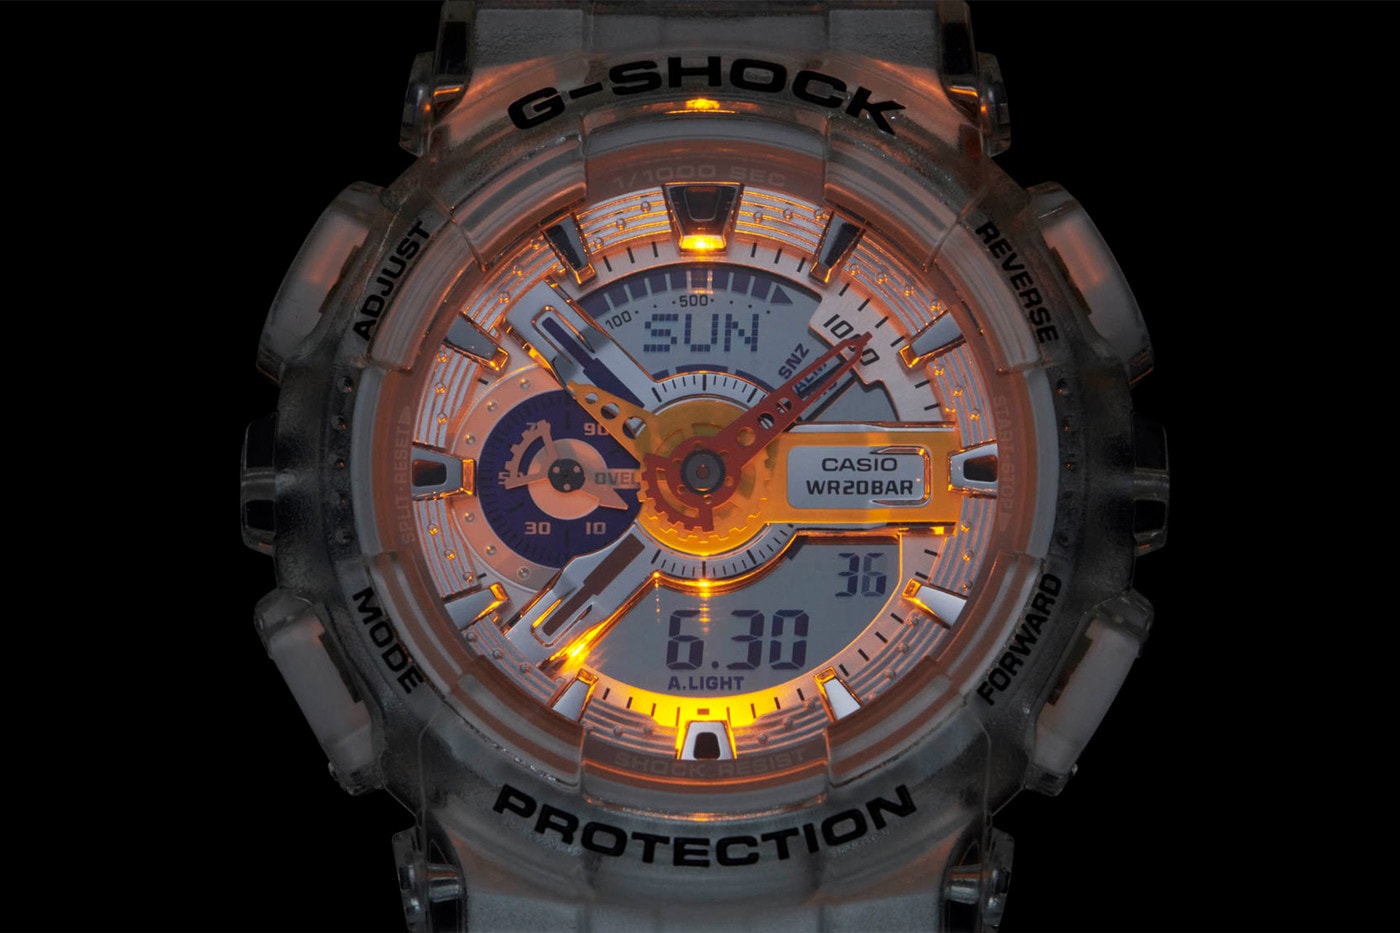 에이셉 퍼그와 지샥이 공동 제작한 투명 시계 ‘GA-110’ 